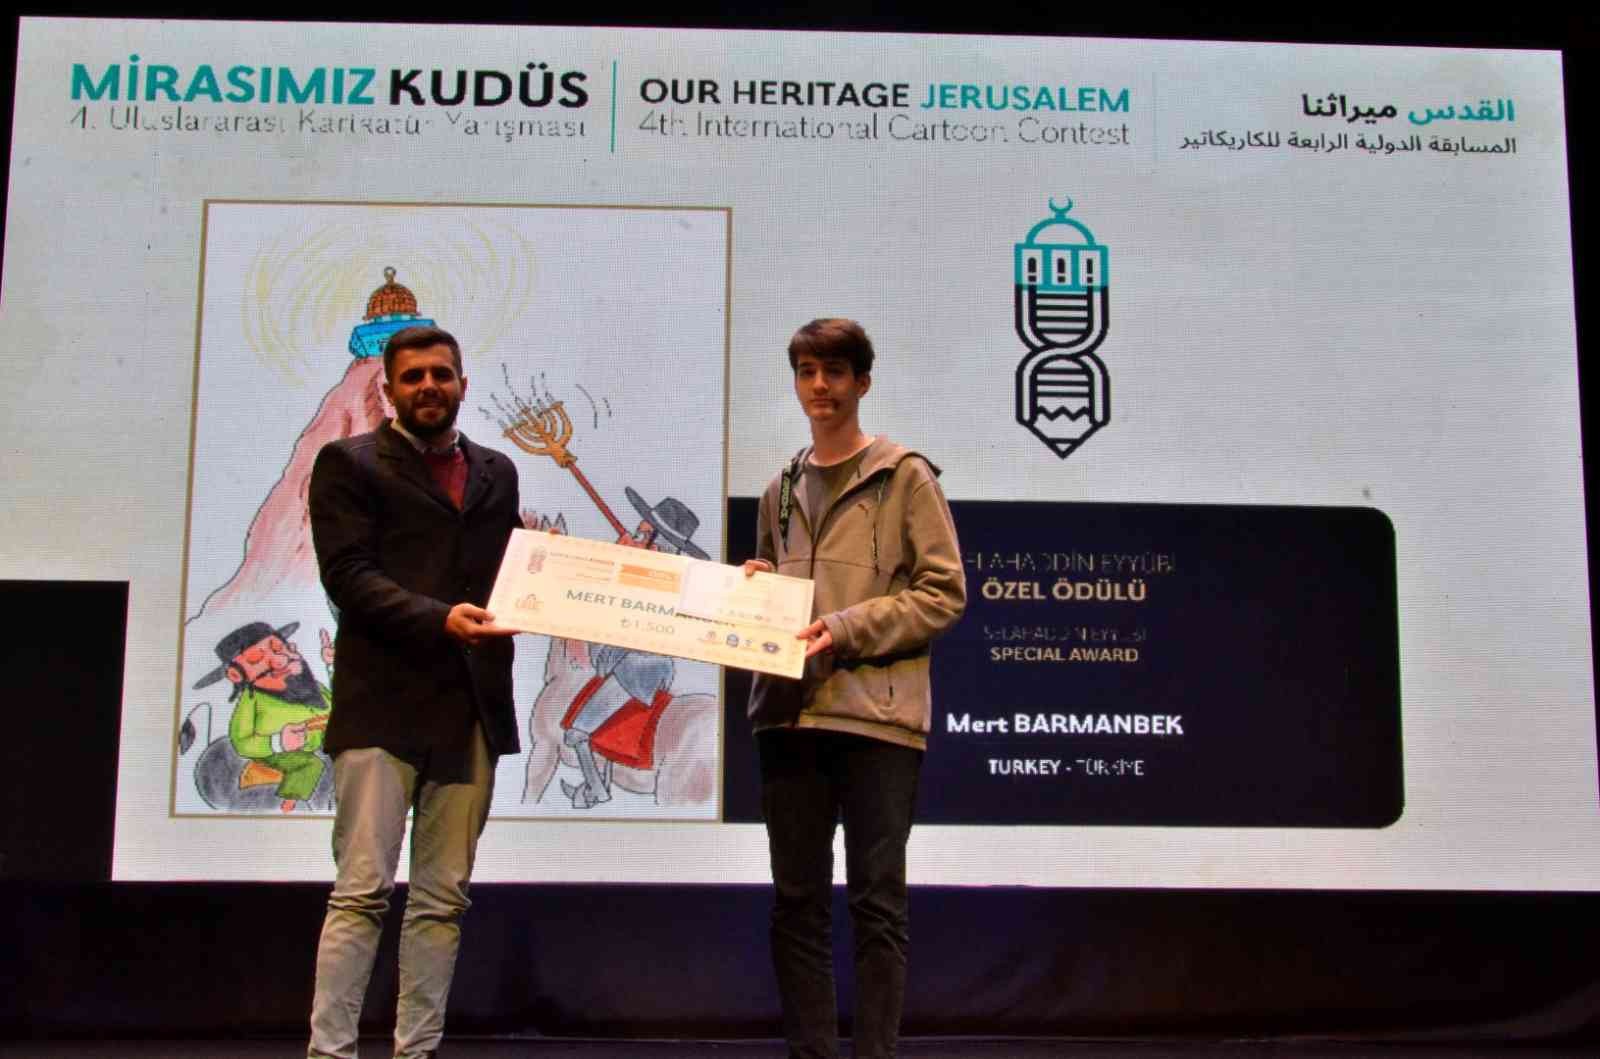 Uluslararası karikatür yarışmasından E-Gençlik’e ödül #kocaeli